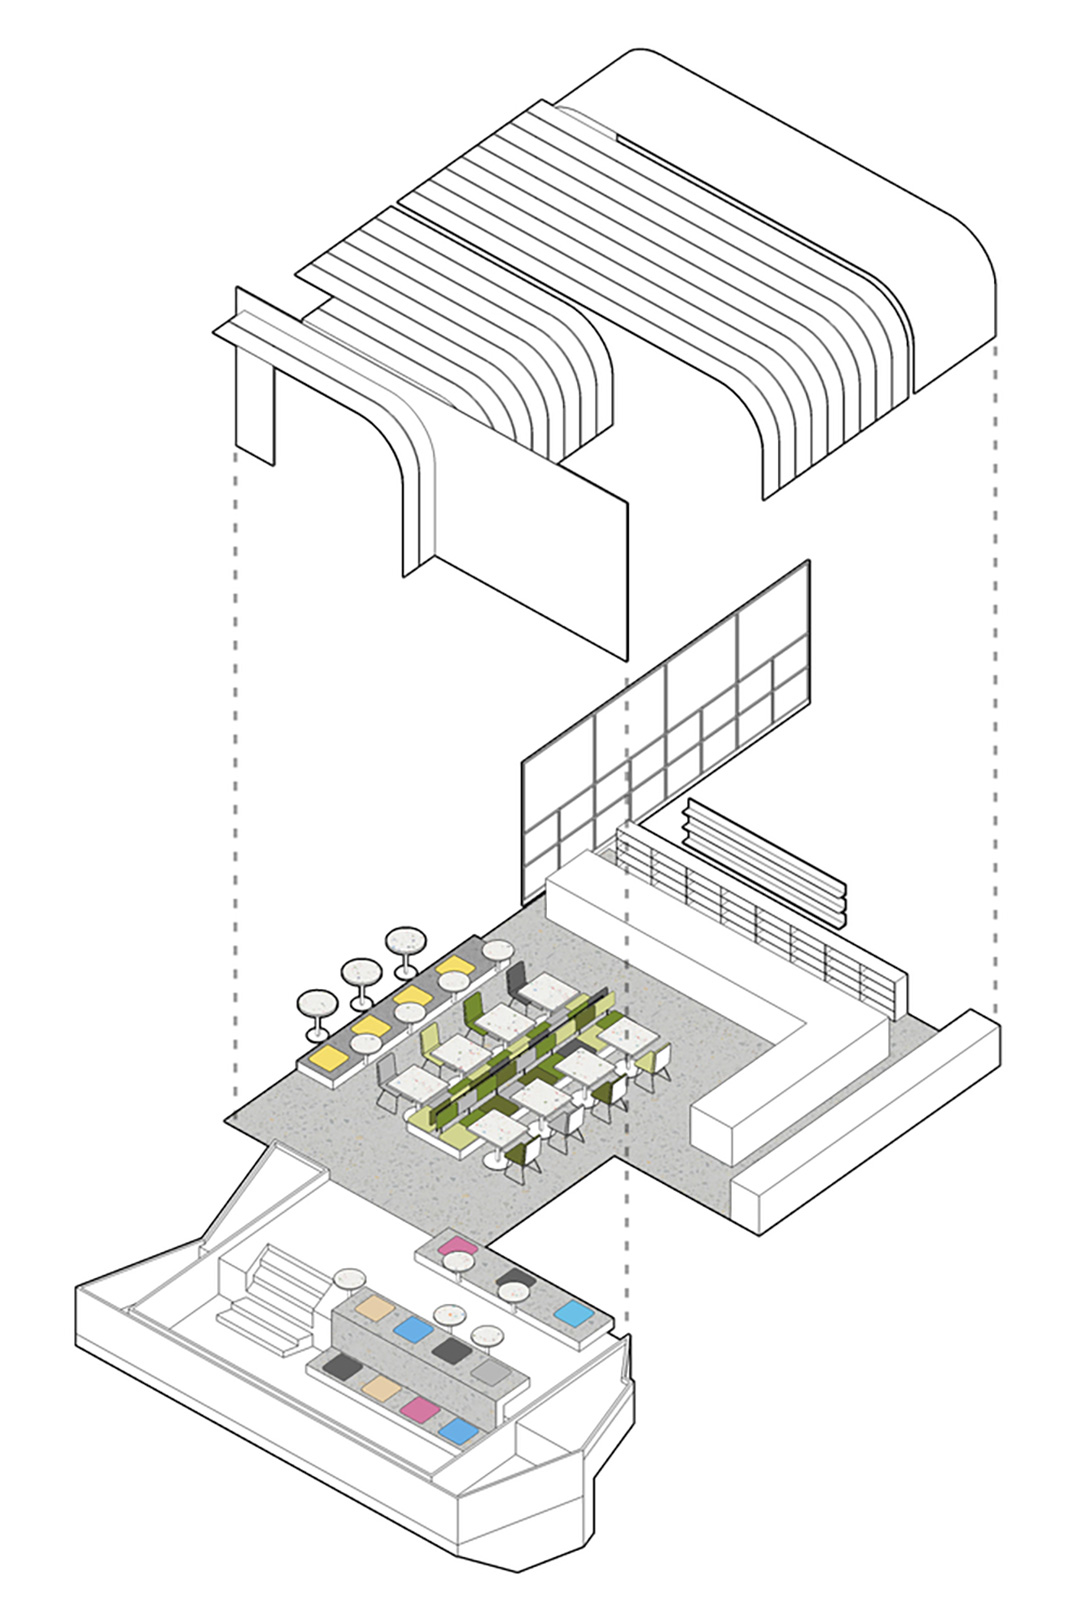 健康食品概念餐厅设计 头条计画 视觉餐饮 全球餐饮研究所 vi设计 空间设计 深圳 杭州 武汉 上海